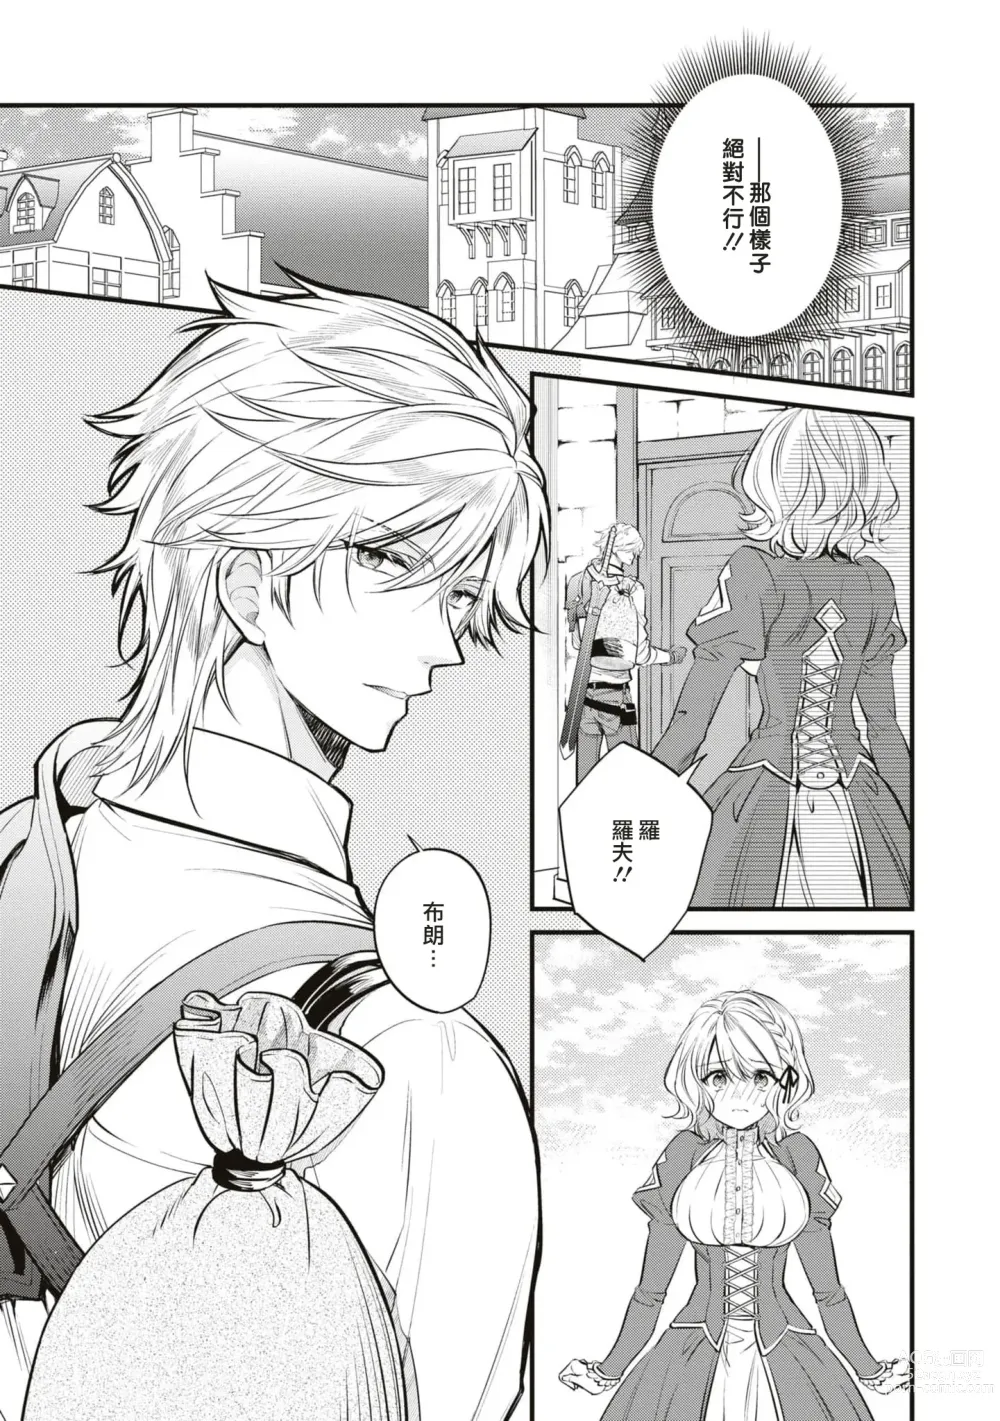 Page 8 of manga 不经意间帮助过的魔女向我报恩，所以被下了会自动朝喜欢的人走去，并会在碰触他时被施予淫纹的魔法。